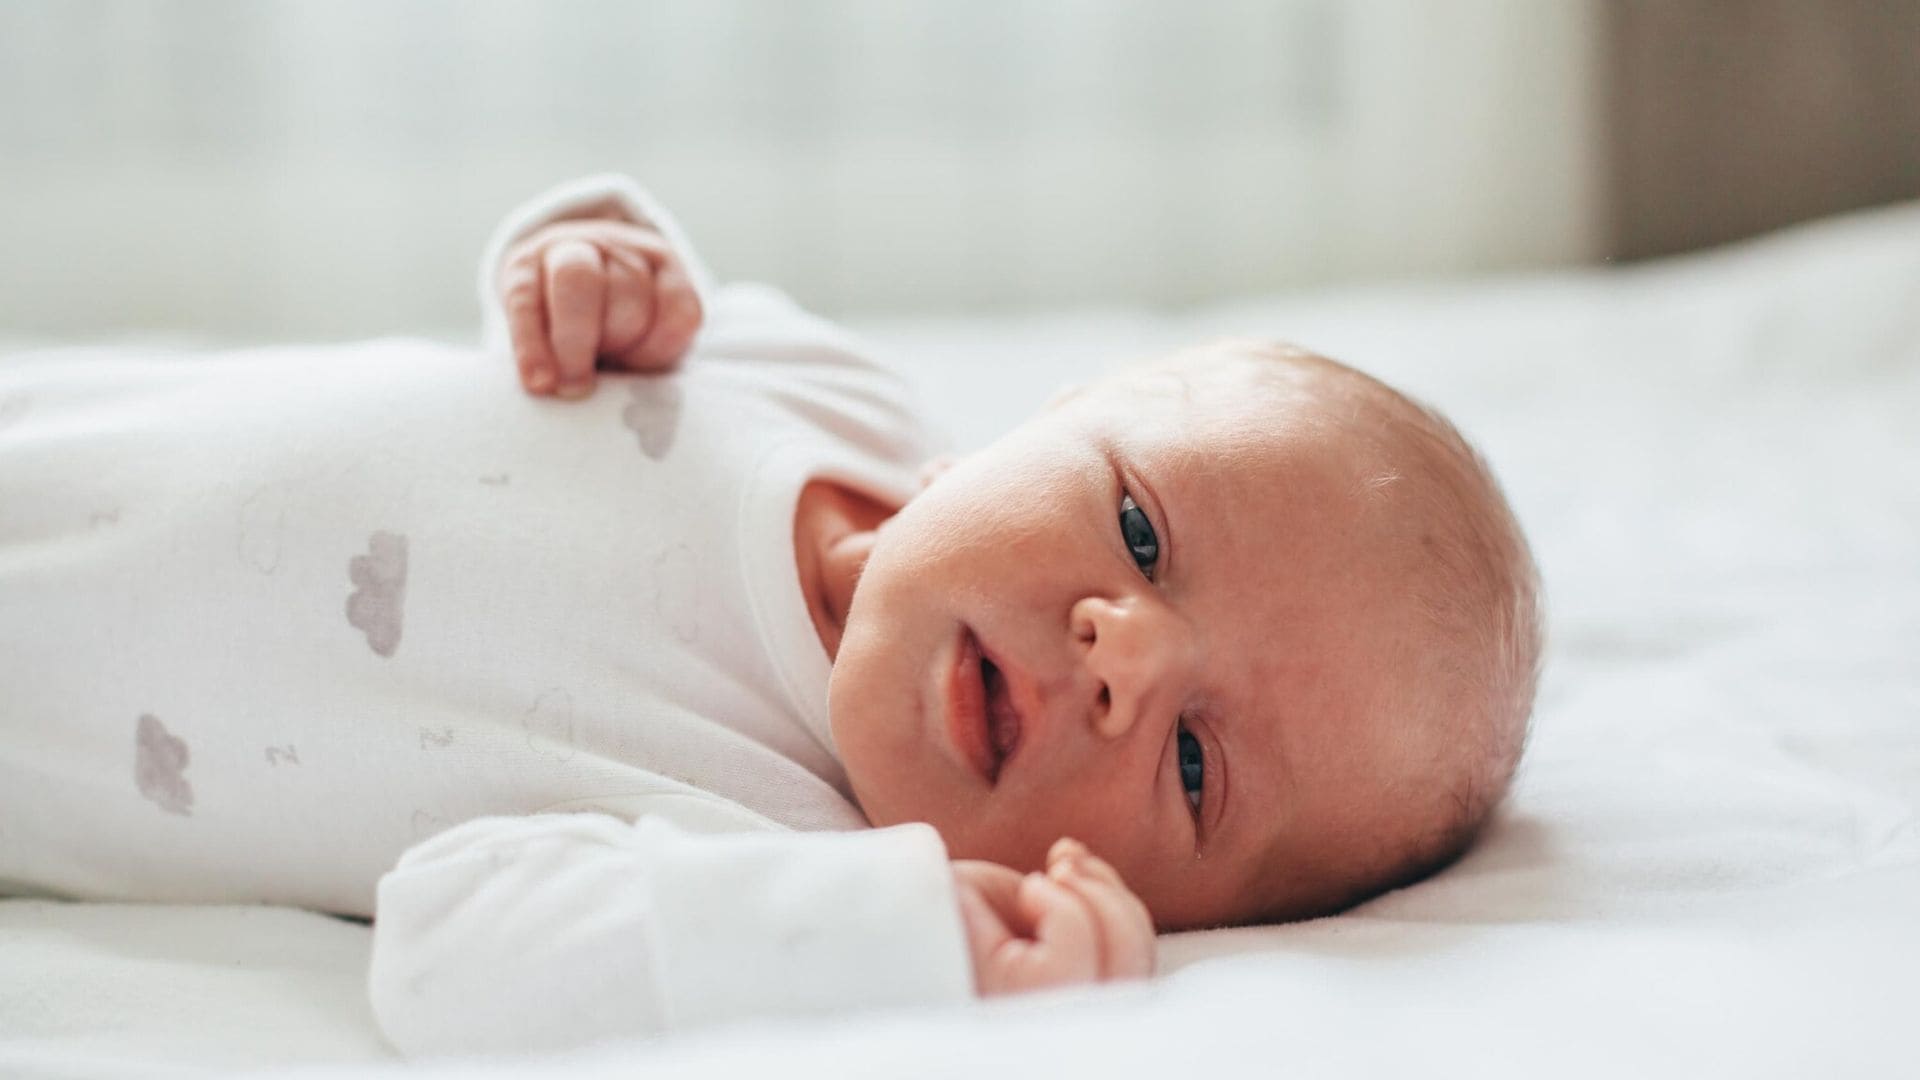 Profilaxis ocular neonatal: qué es y por qué se realiza